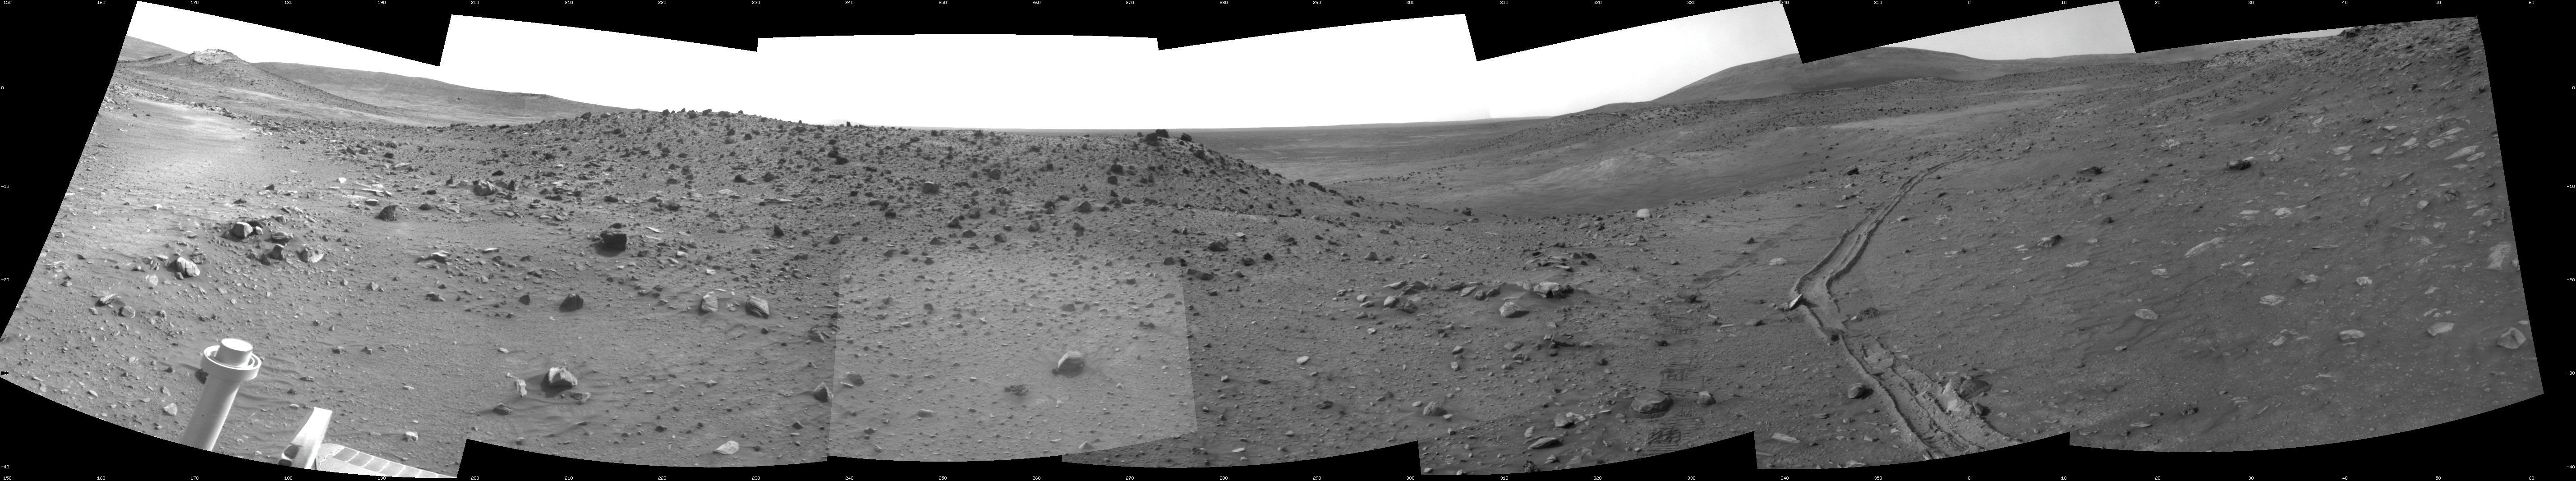 무인탐사선으로 조사한 화성의 지표면 이미지